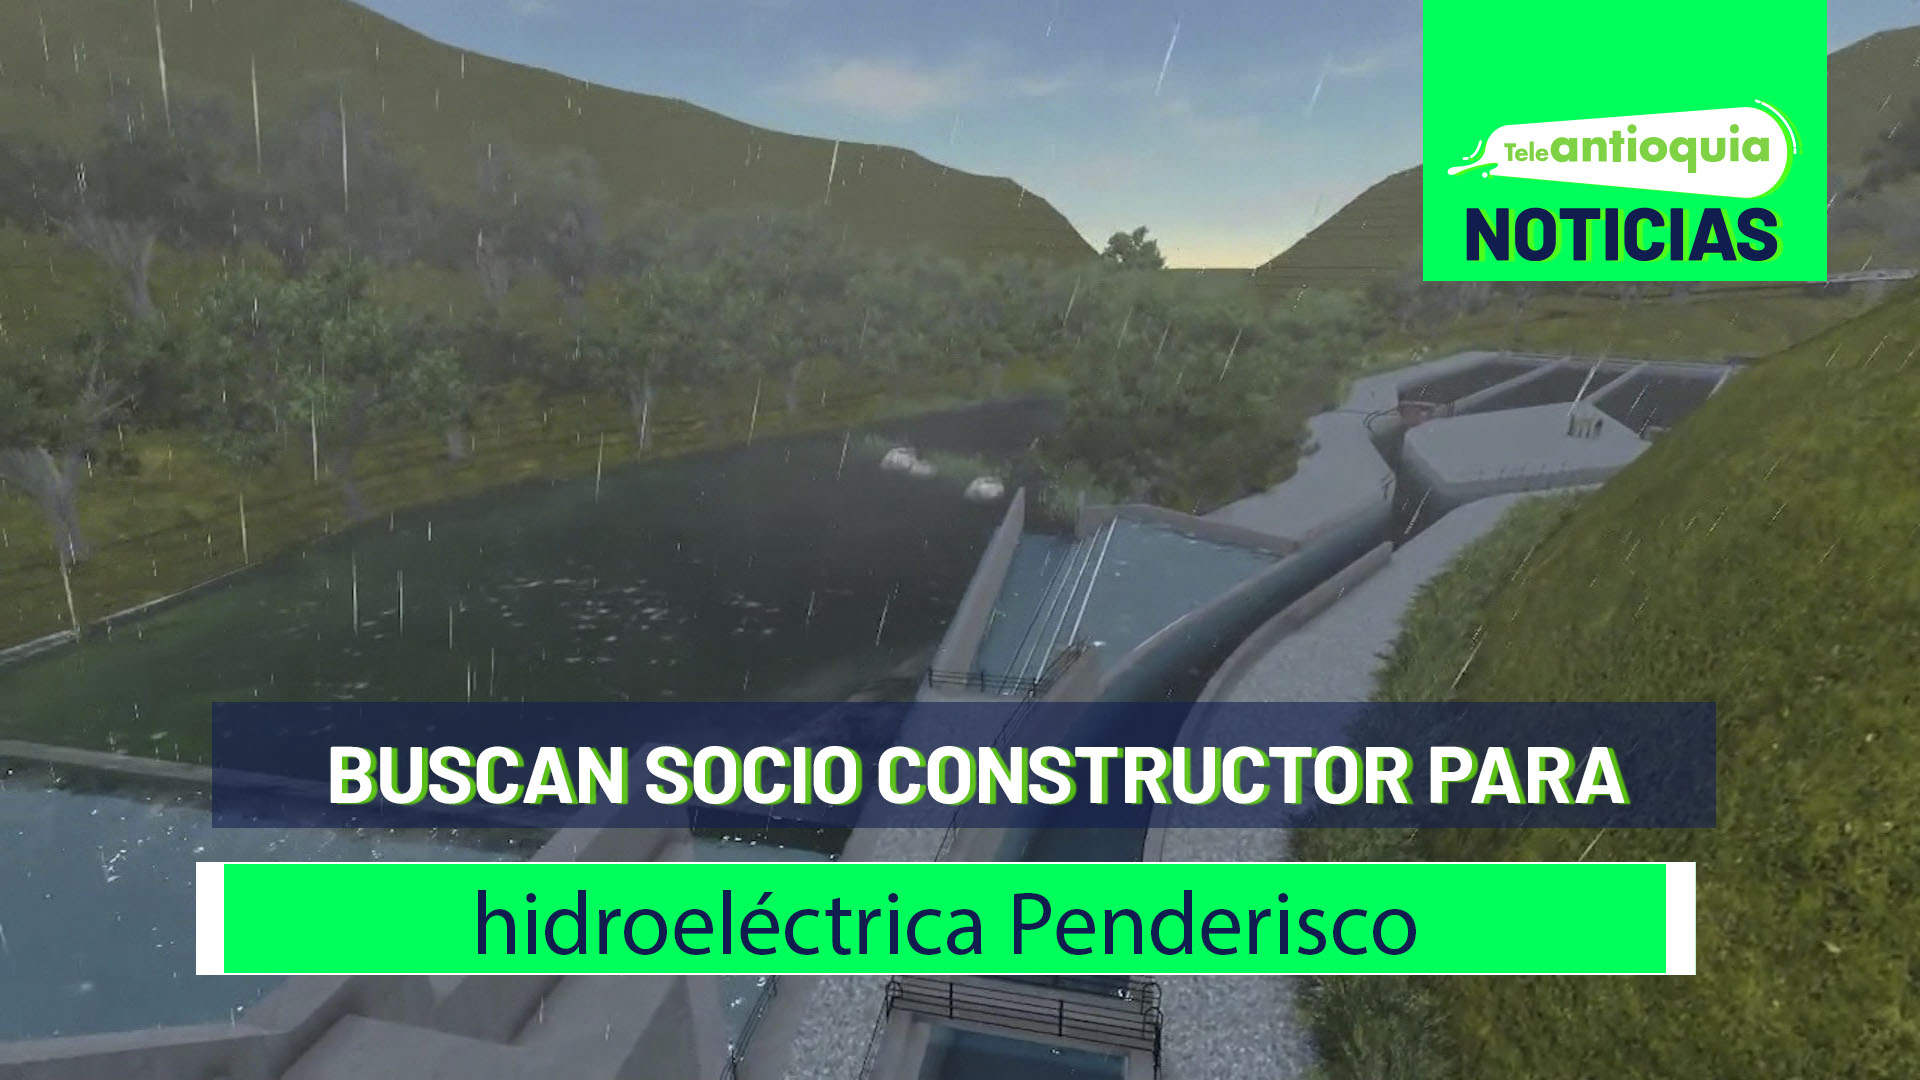 Buscan socio constructor para hidroeléctrica Penderisco